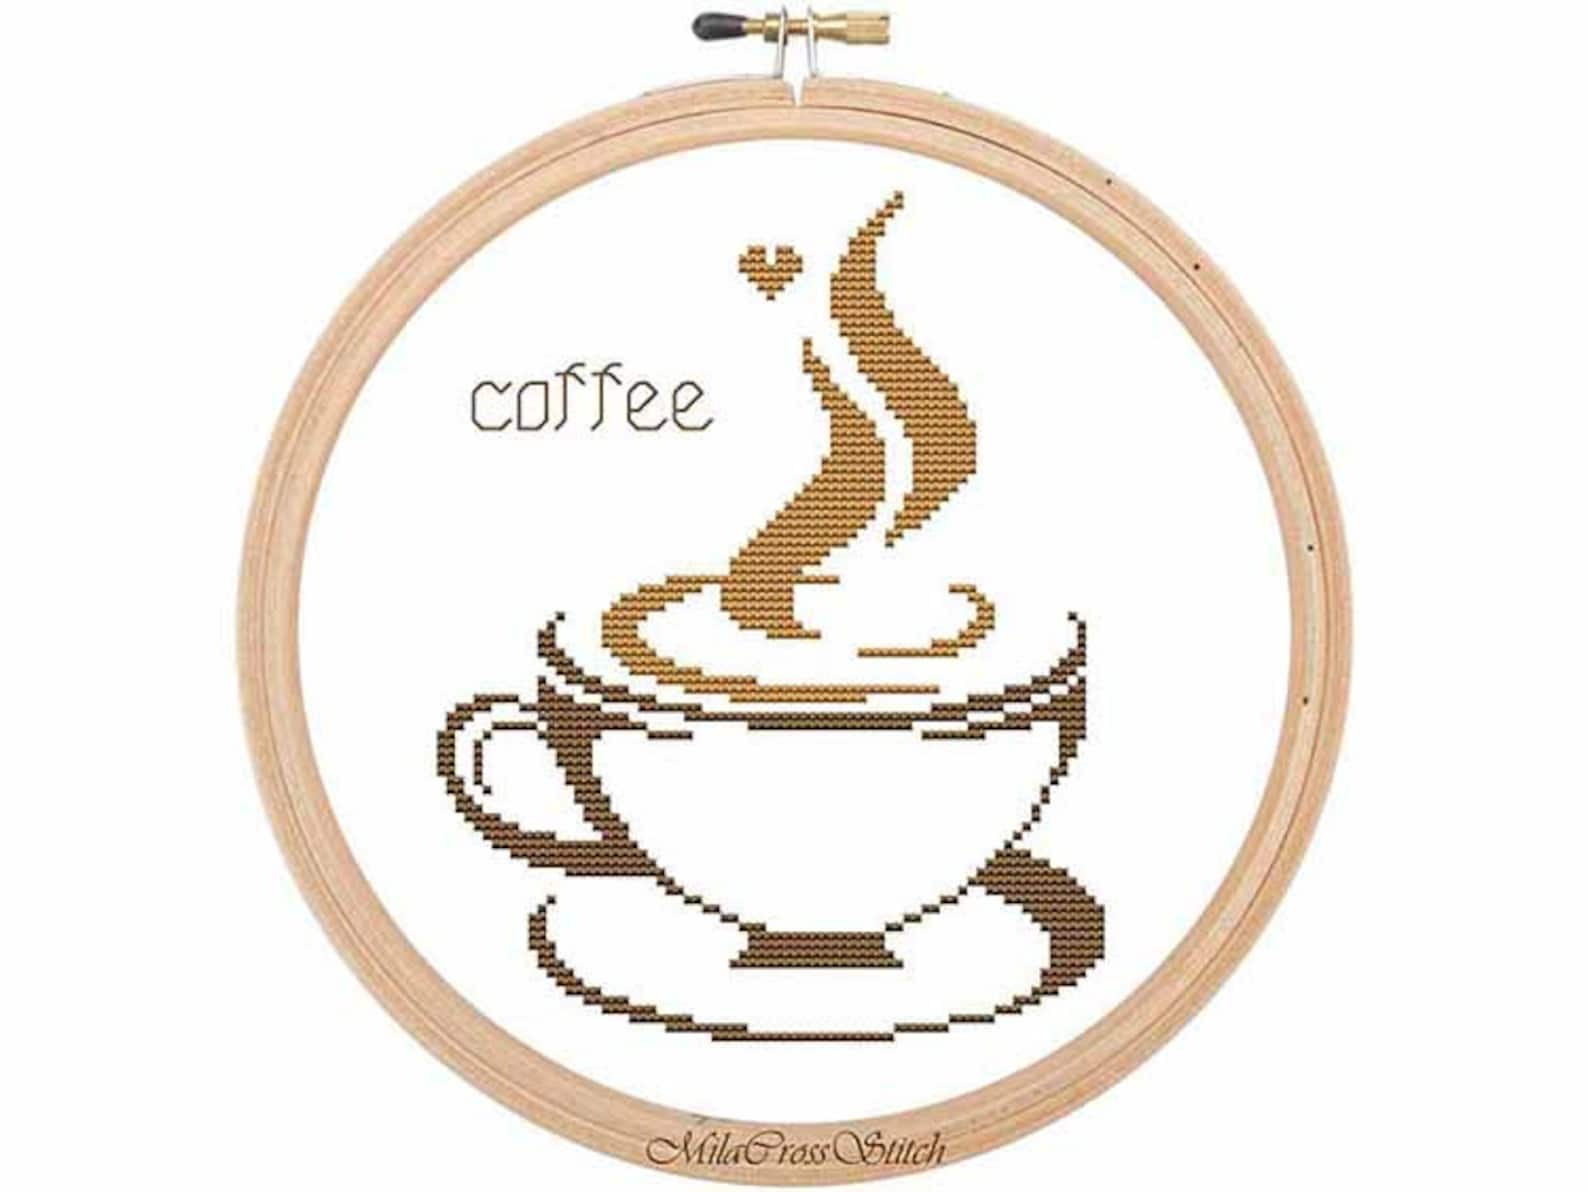 Cups pdf. Вышивка крестом кофе. Схема вышивки капучино. Вышивка крестом кофейная тема.